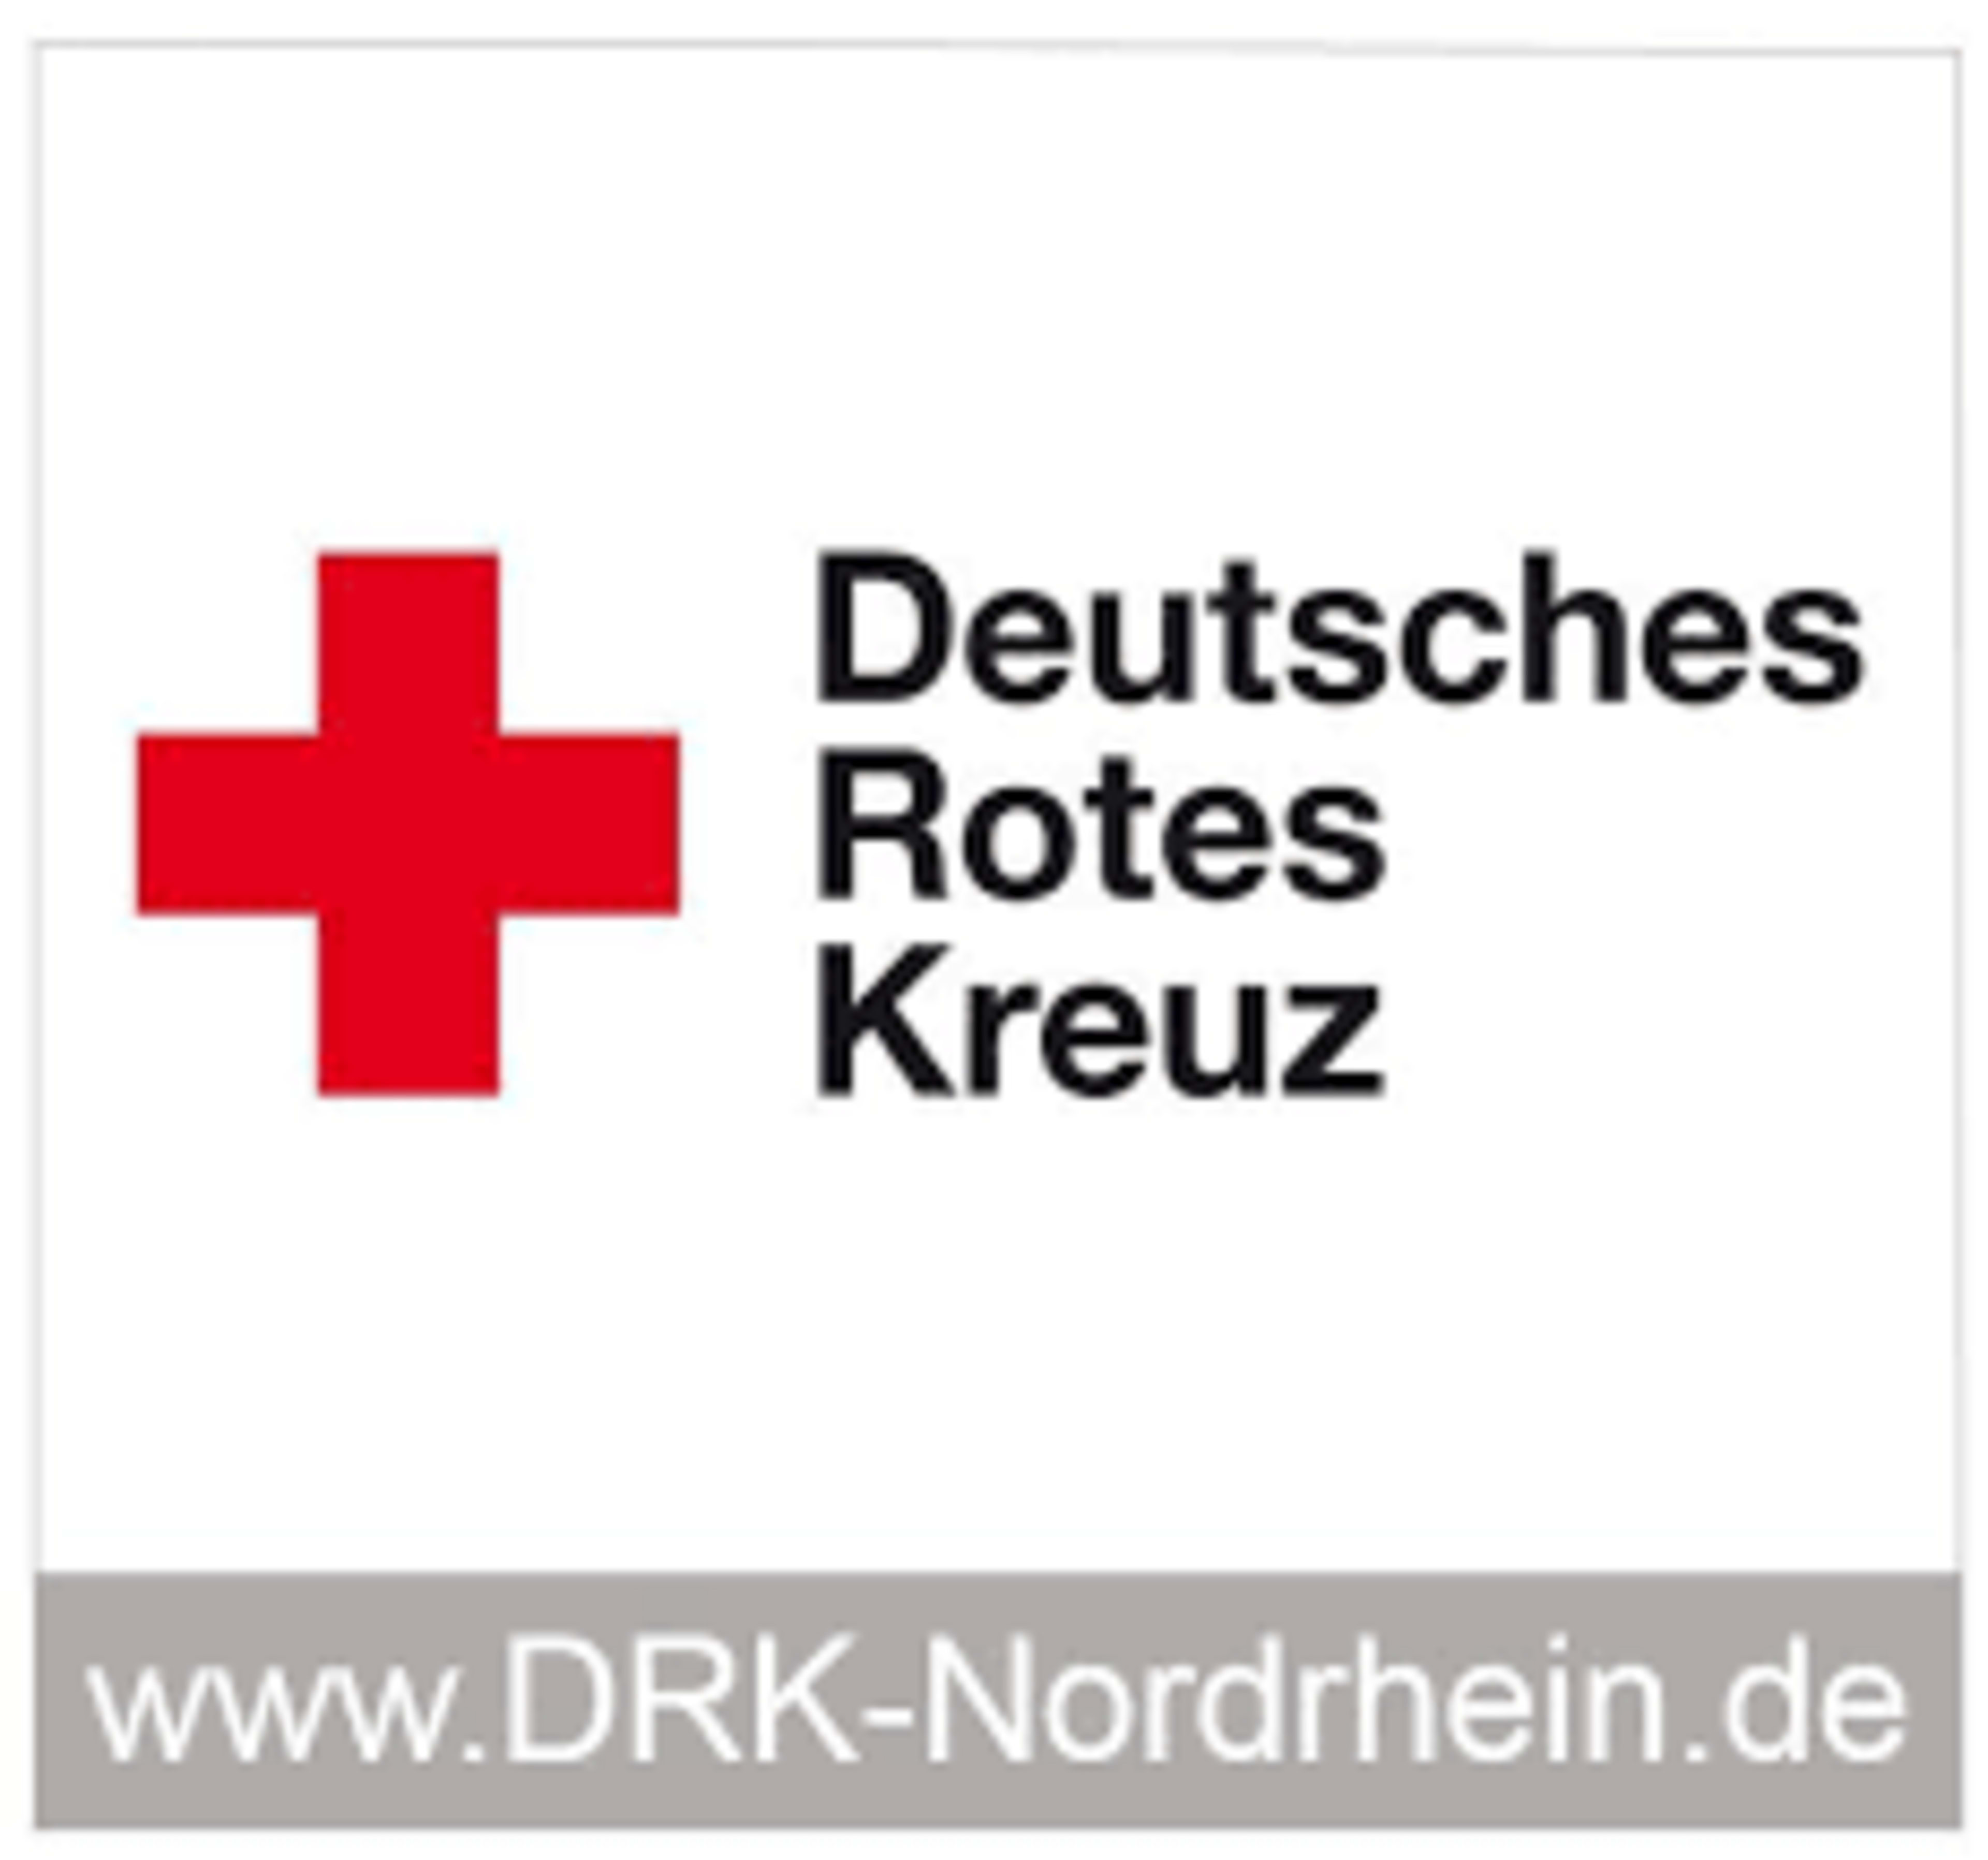 Deutsches Rotes Kreuz (DRK) - Landesverband Nordrhein e.V. logo